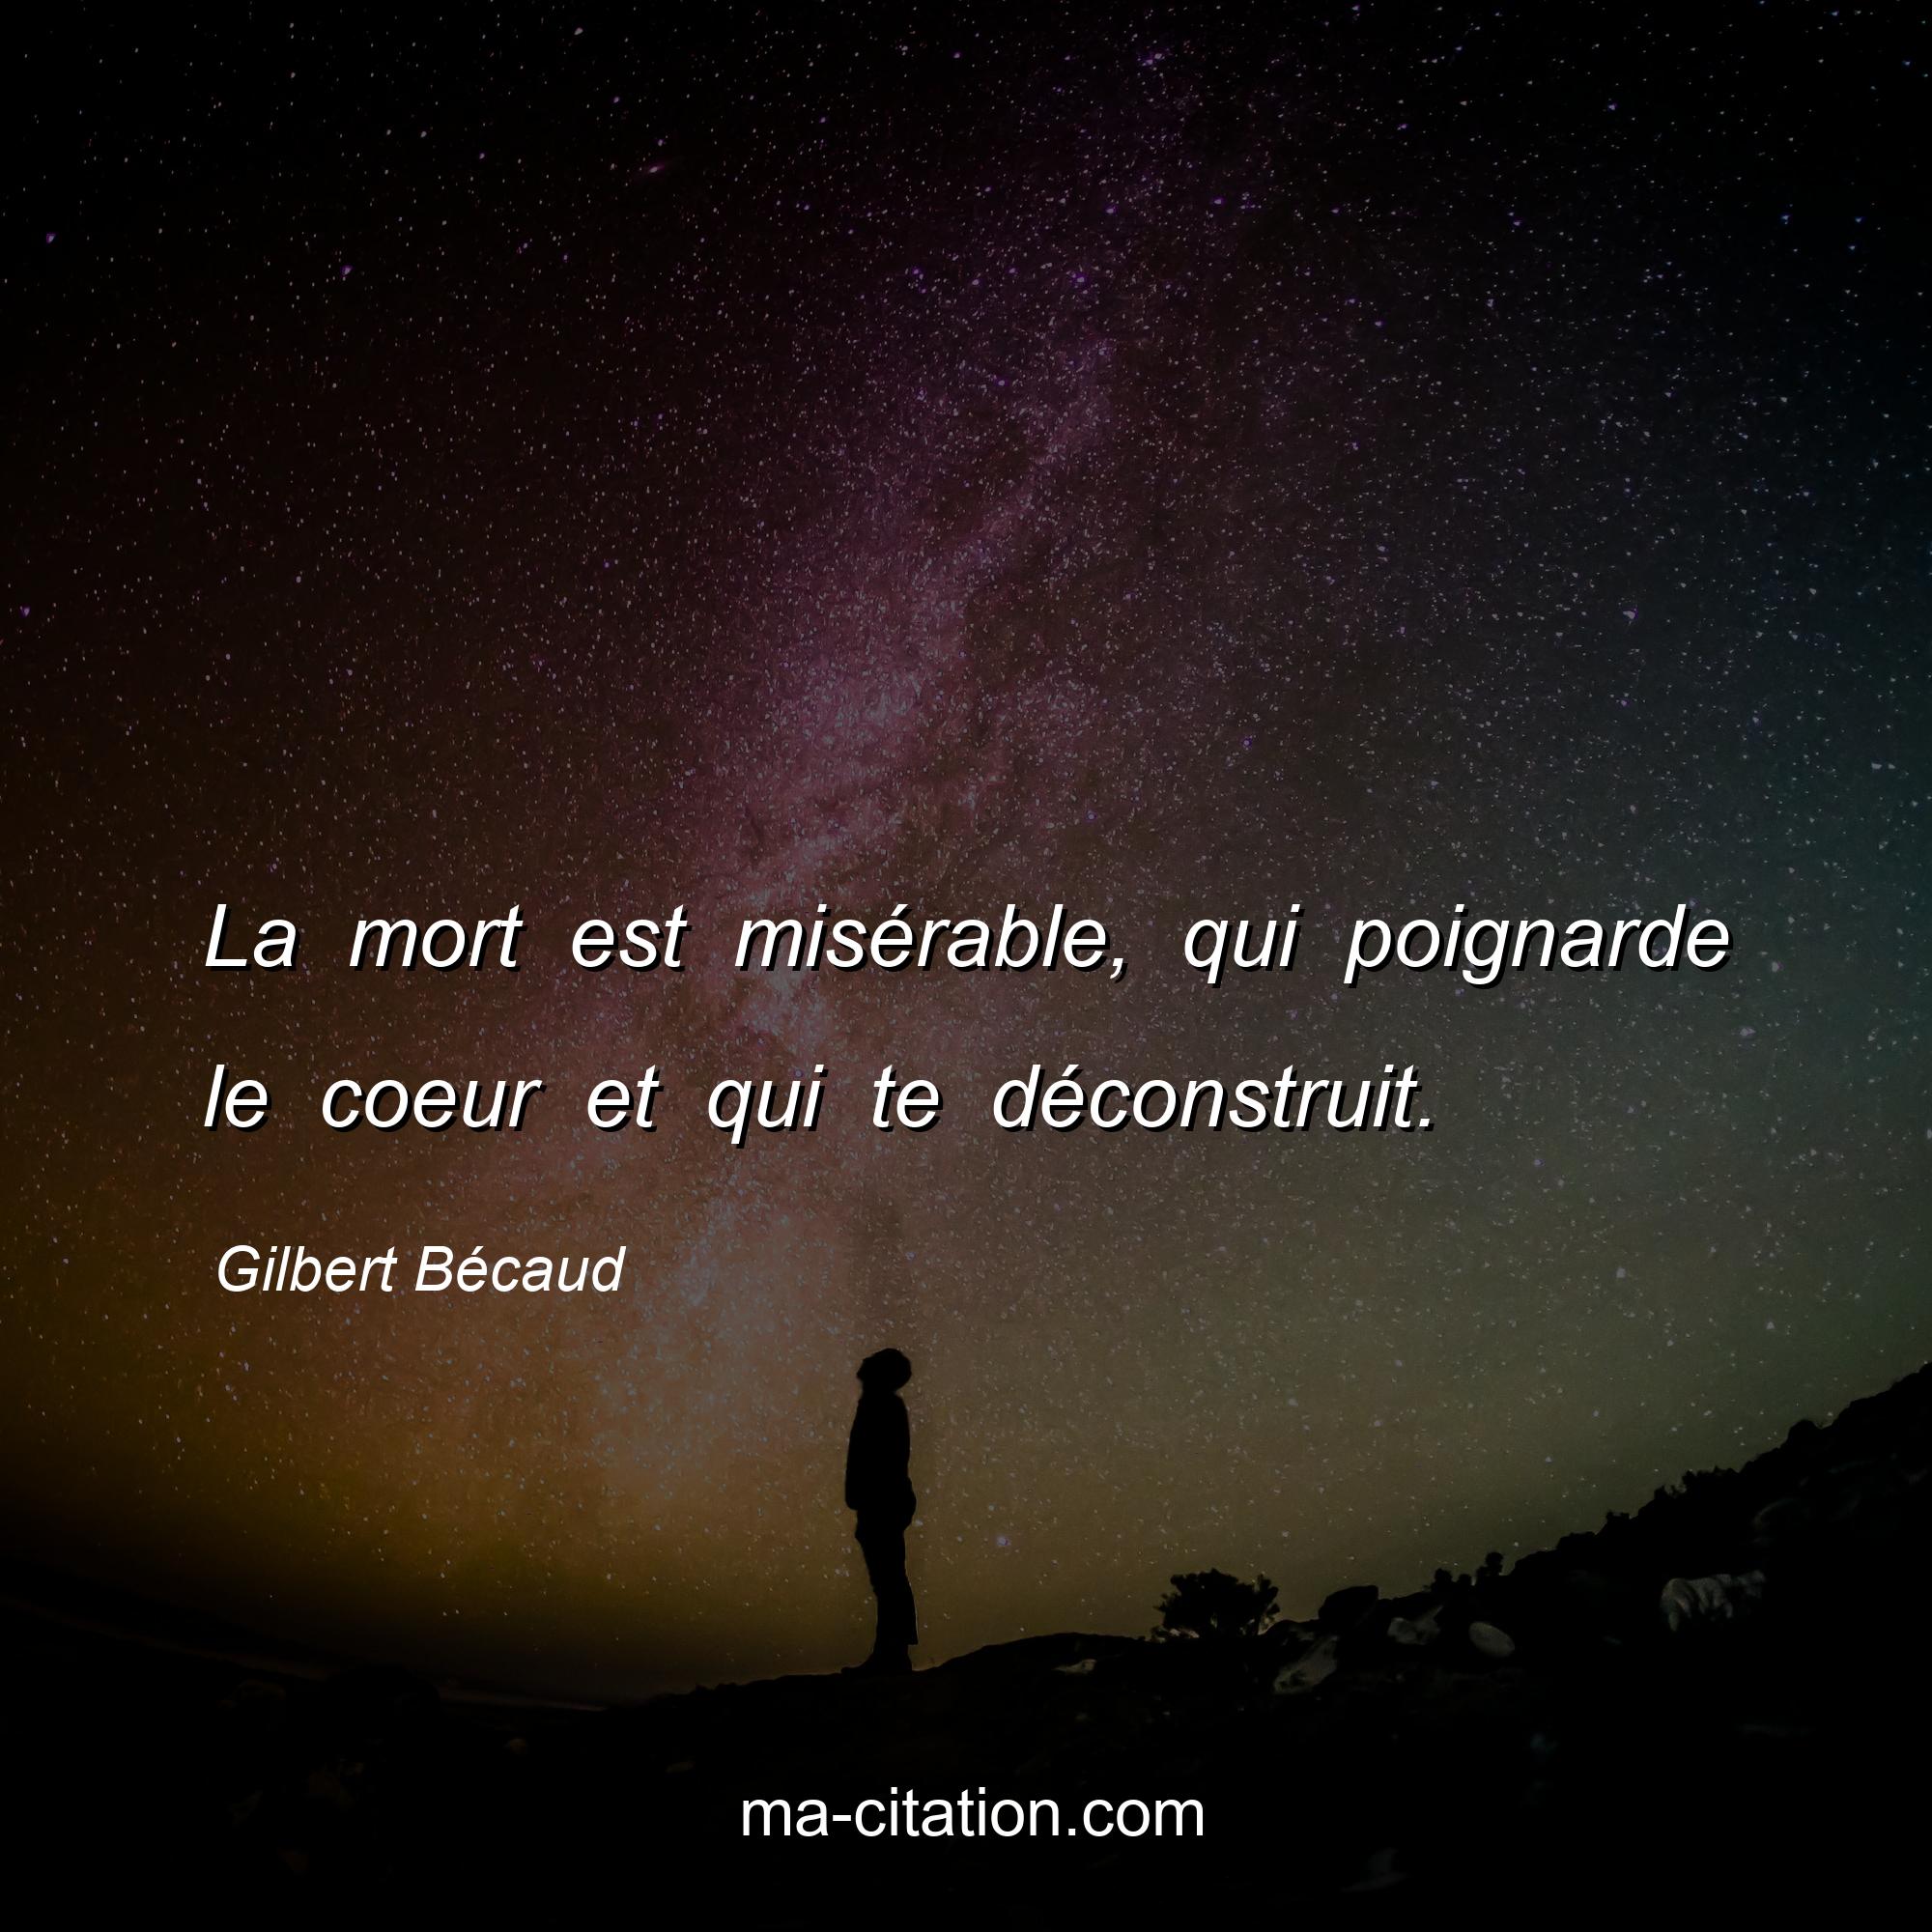 Gilbert Bécaud : La mort est misérable, qui poignarde le coeur et qui te déconstruit.